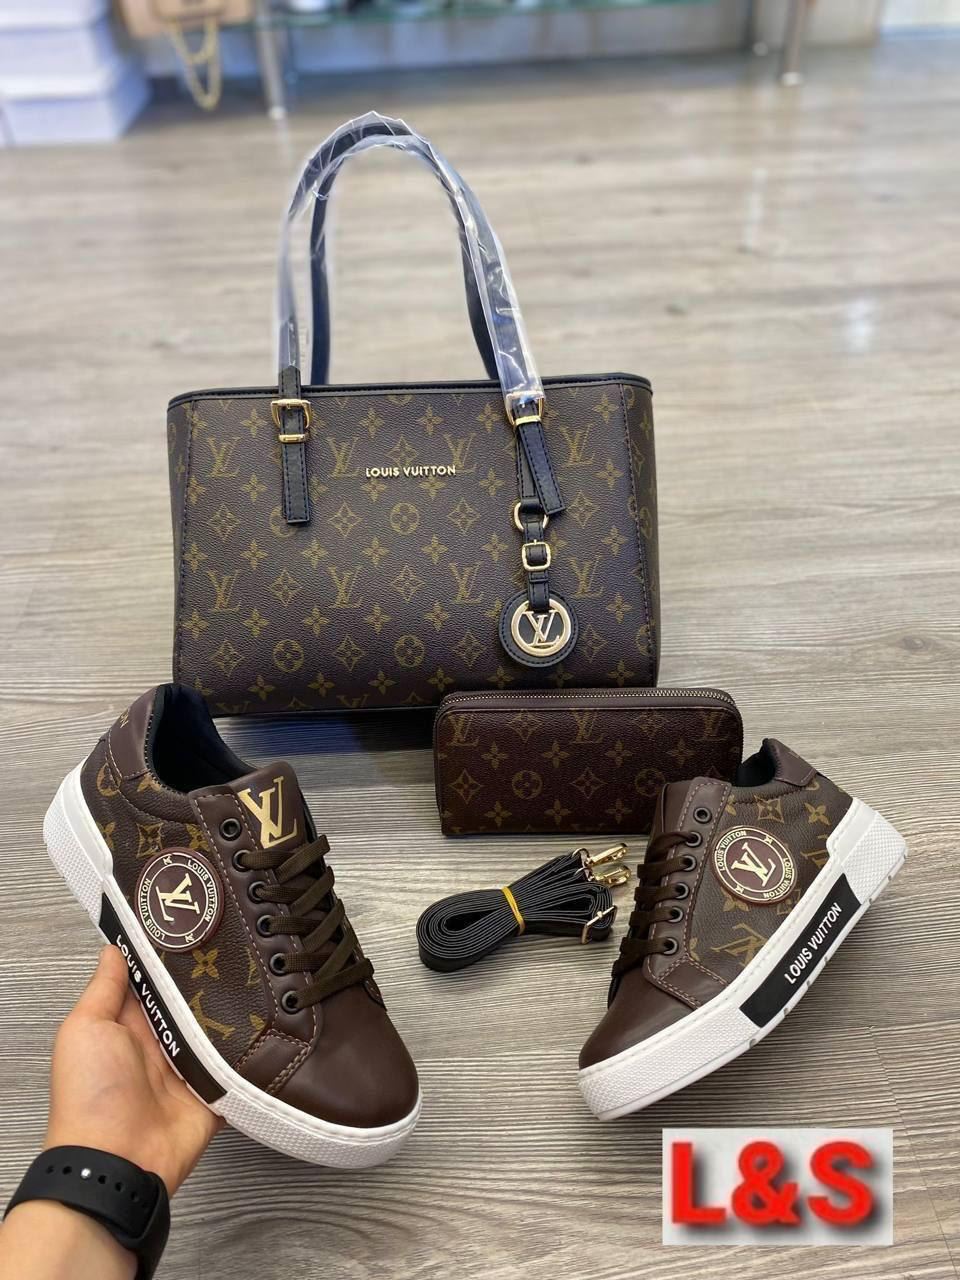 Conjunto bolso zapatillas y cartera Louis Vuitton - Imagen 1